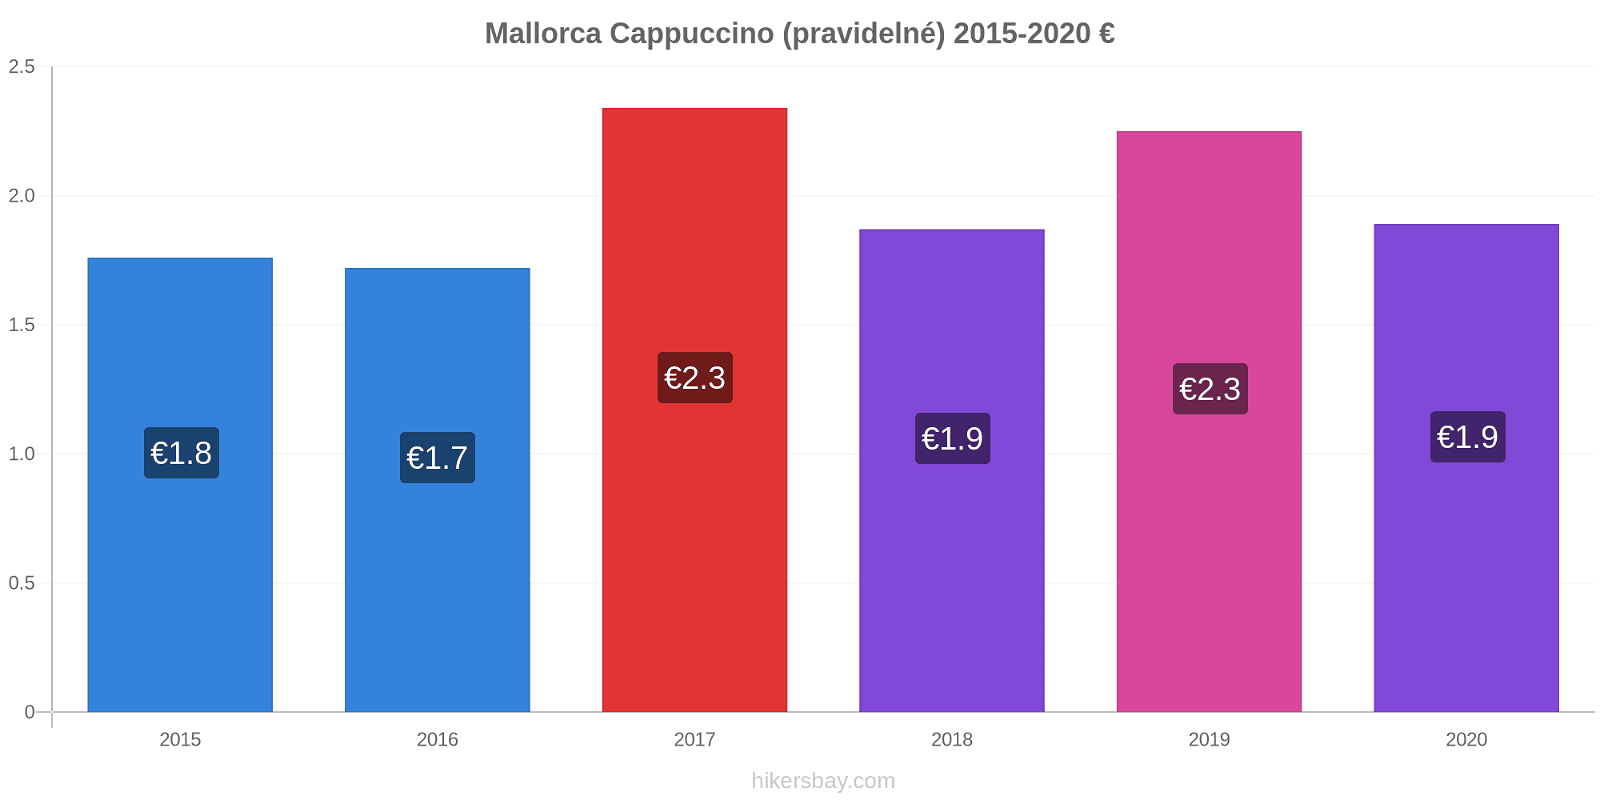 Mallorca změny cen Cappuccino (pravidelné) hikersbay.com